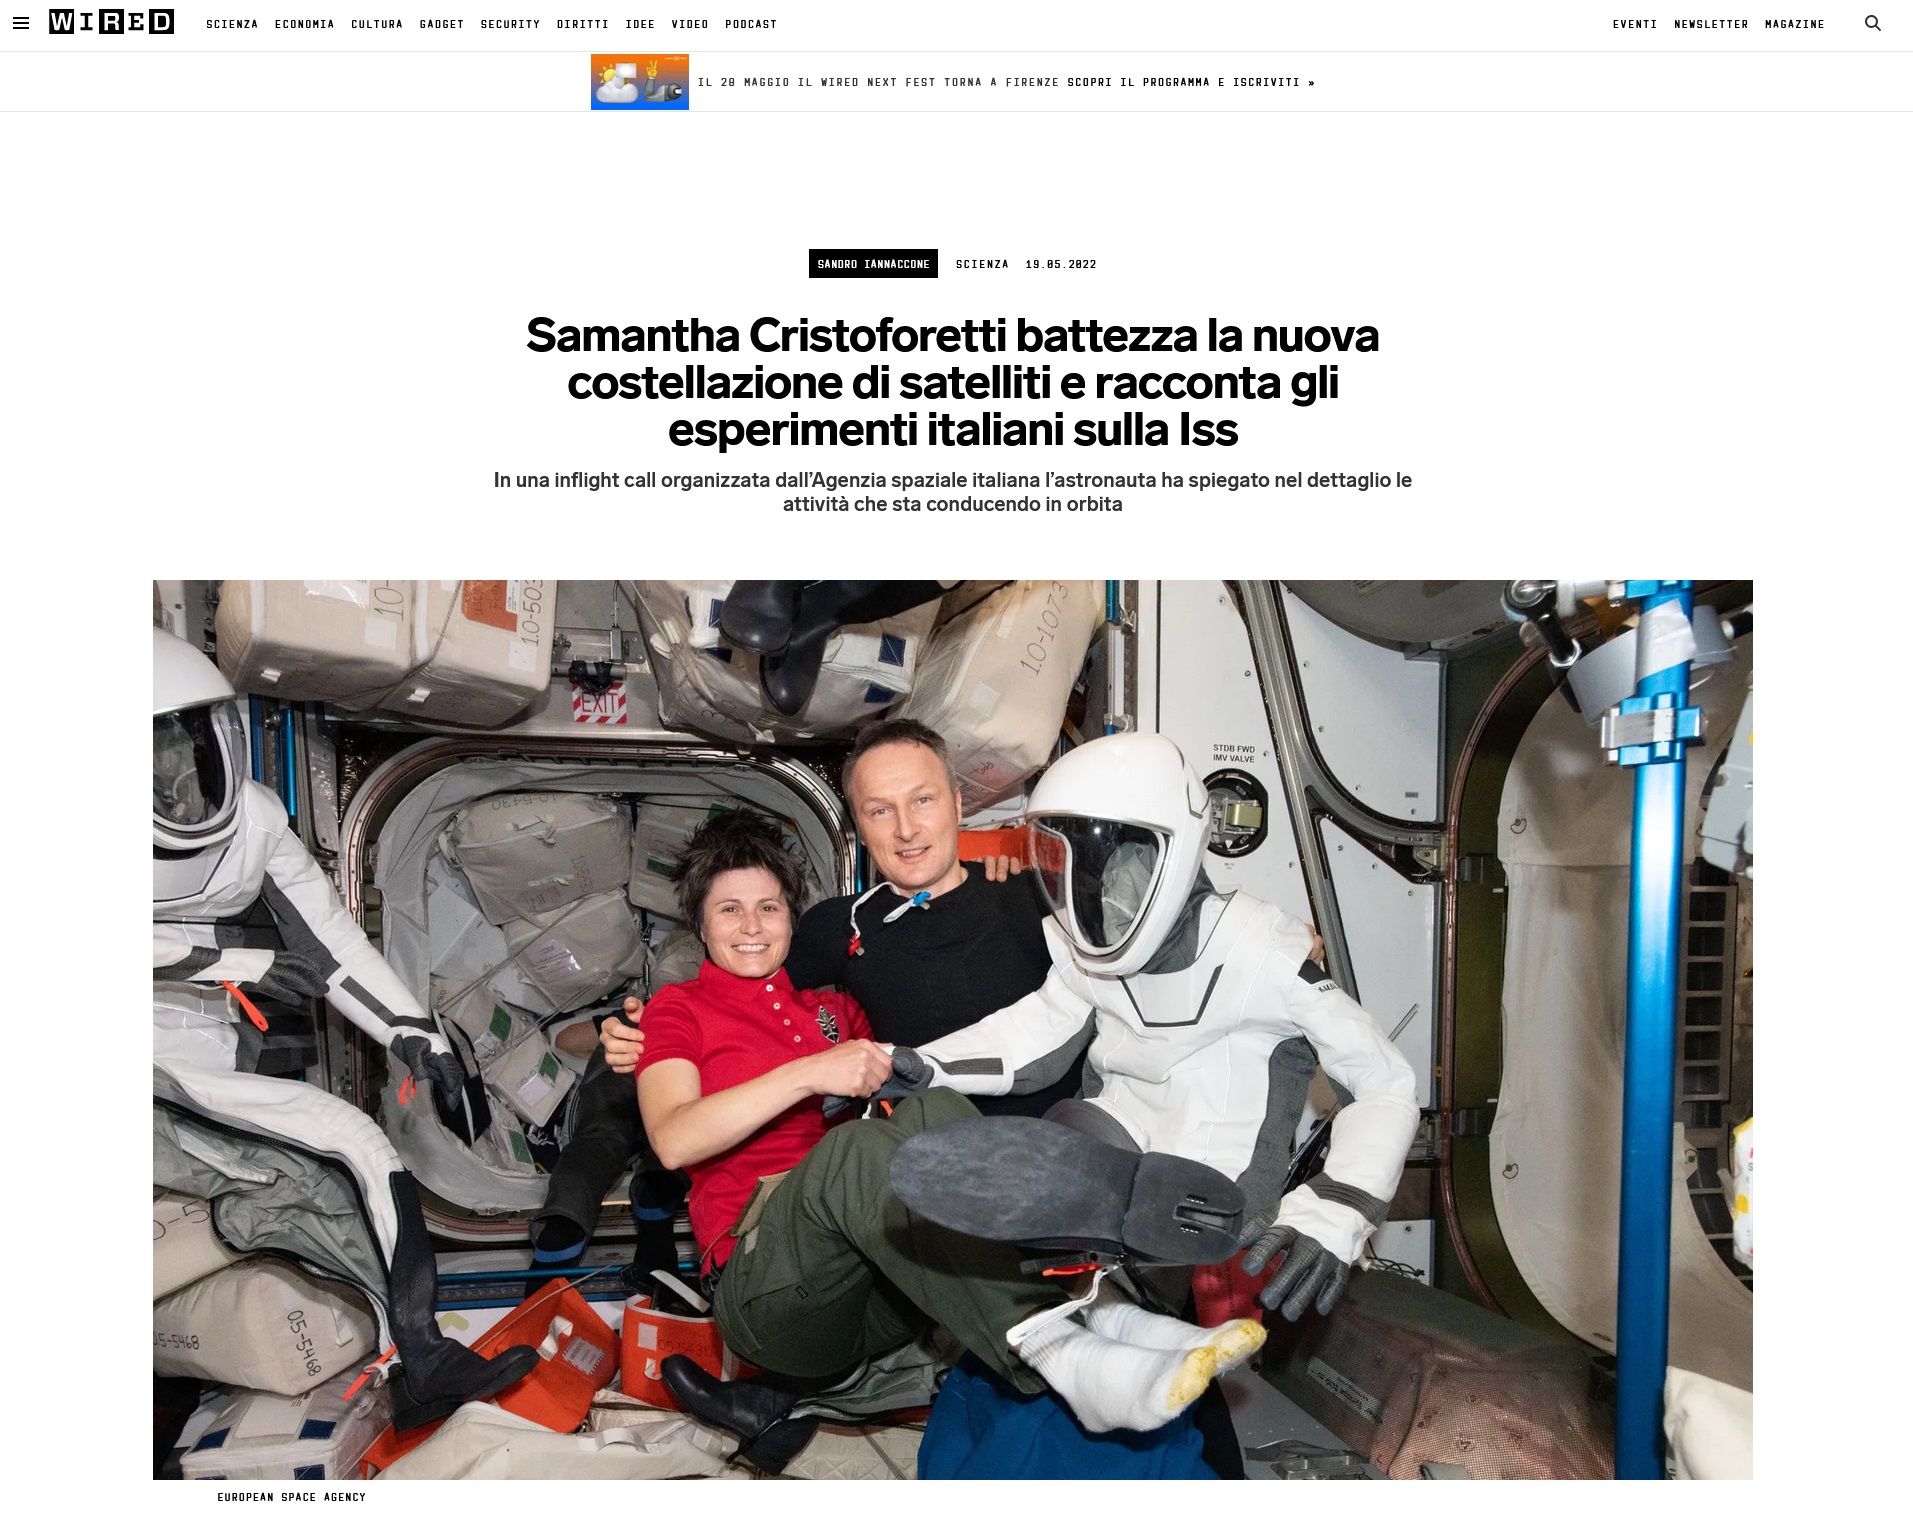 Wired - Samantha Cristoforetti racconta gli esperimenti italiani sull'ISS